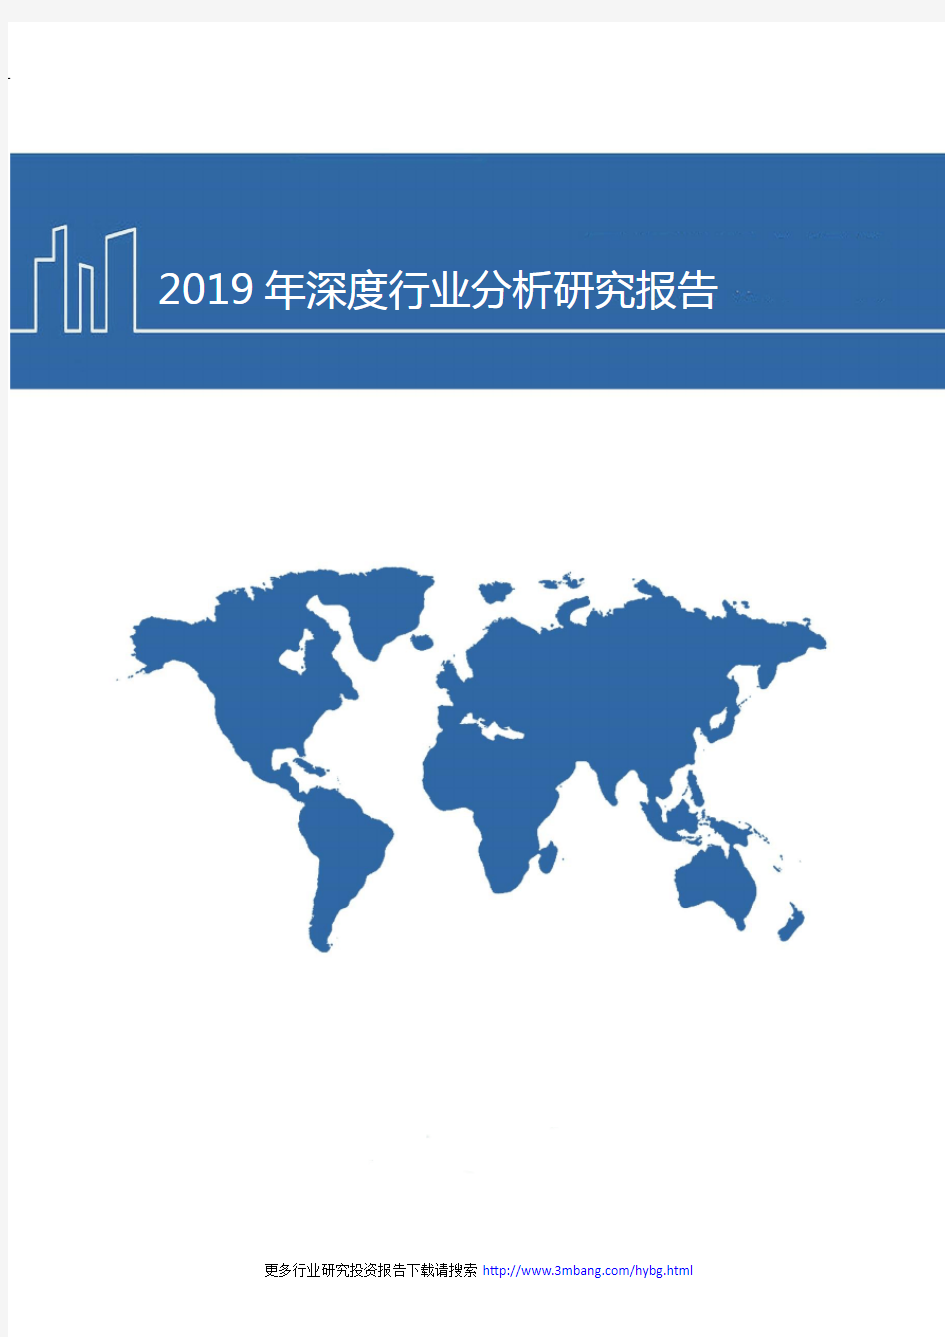 2019年中国医疗信息化建设现状及未来发展趋势分析研究报告